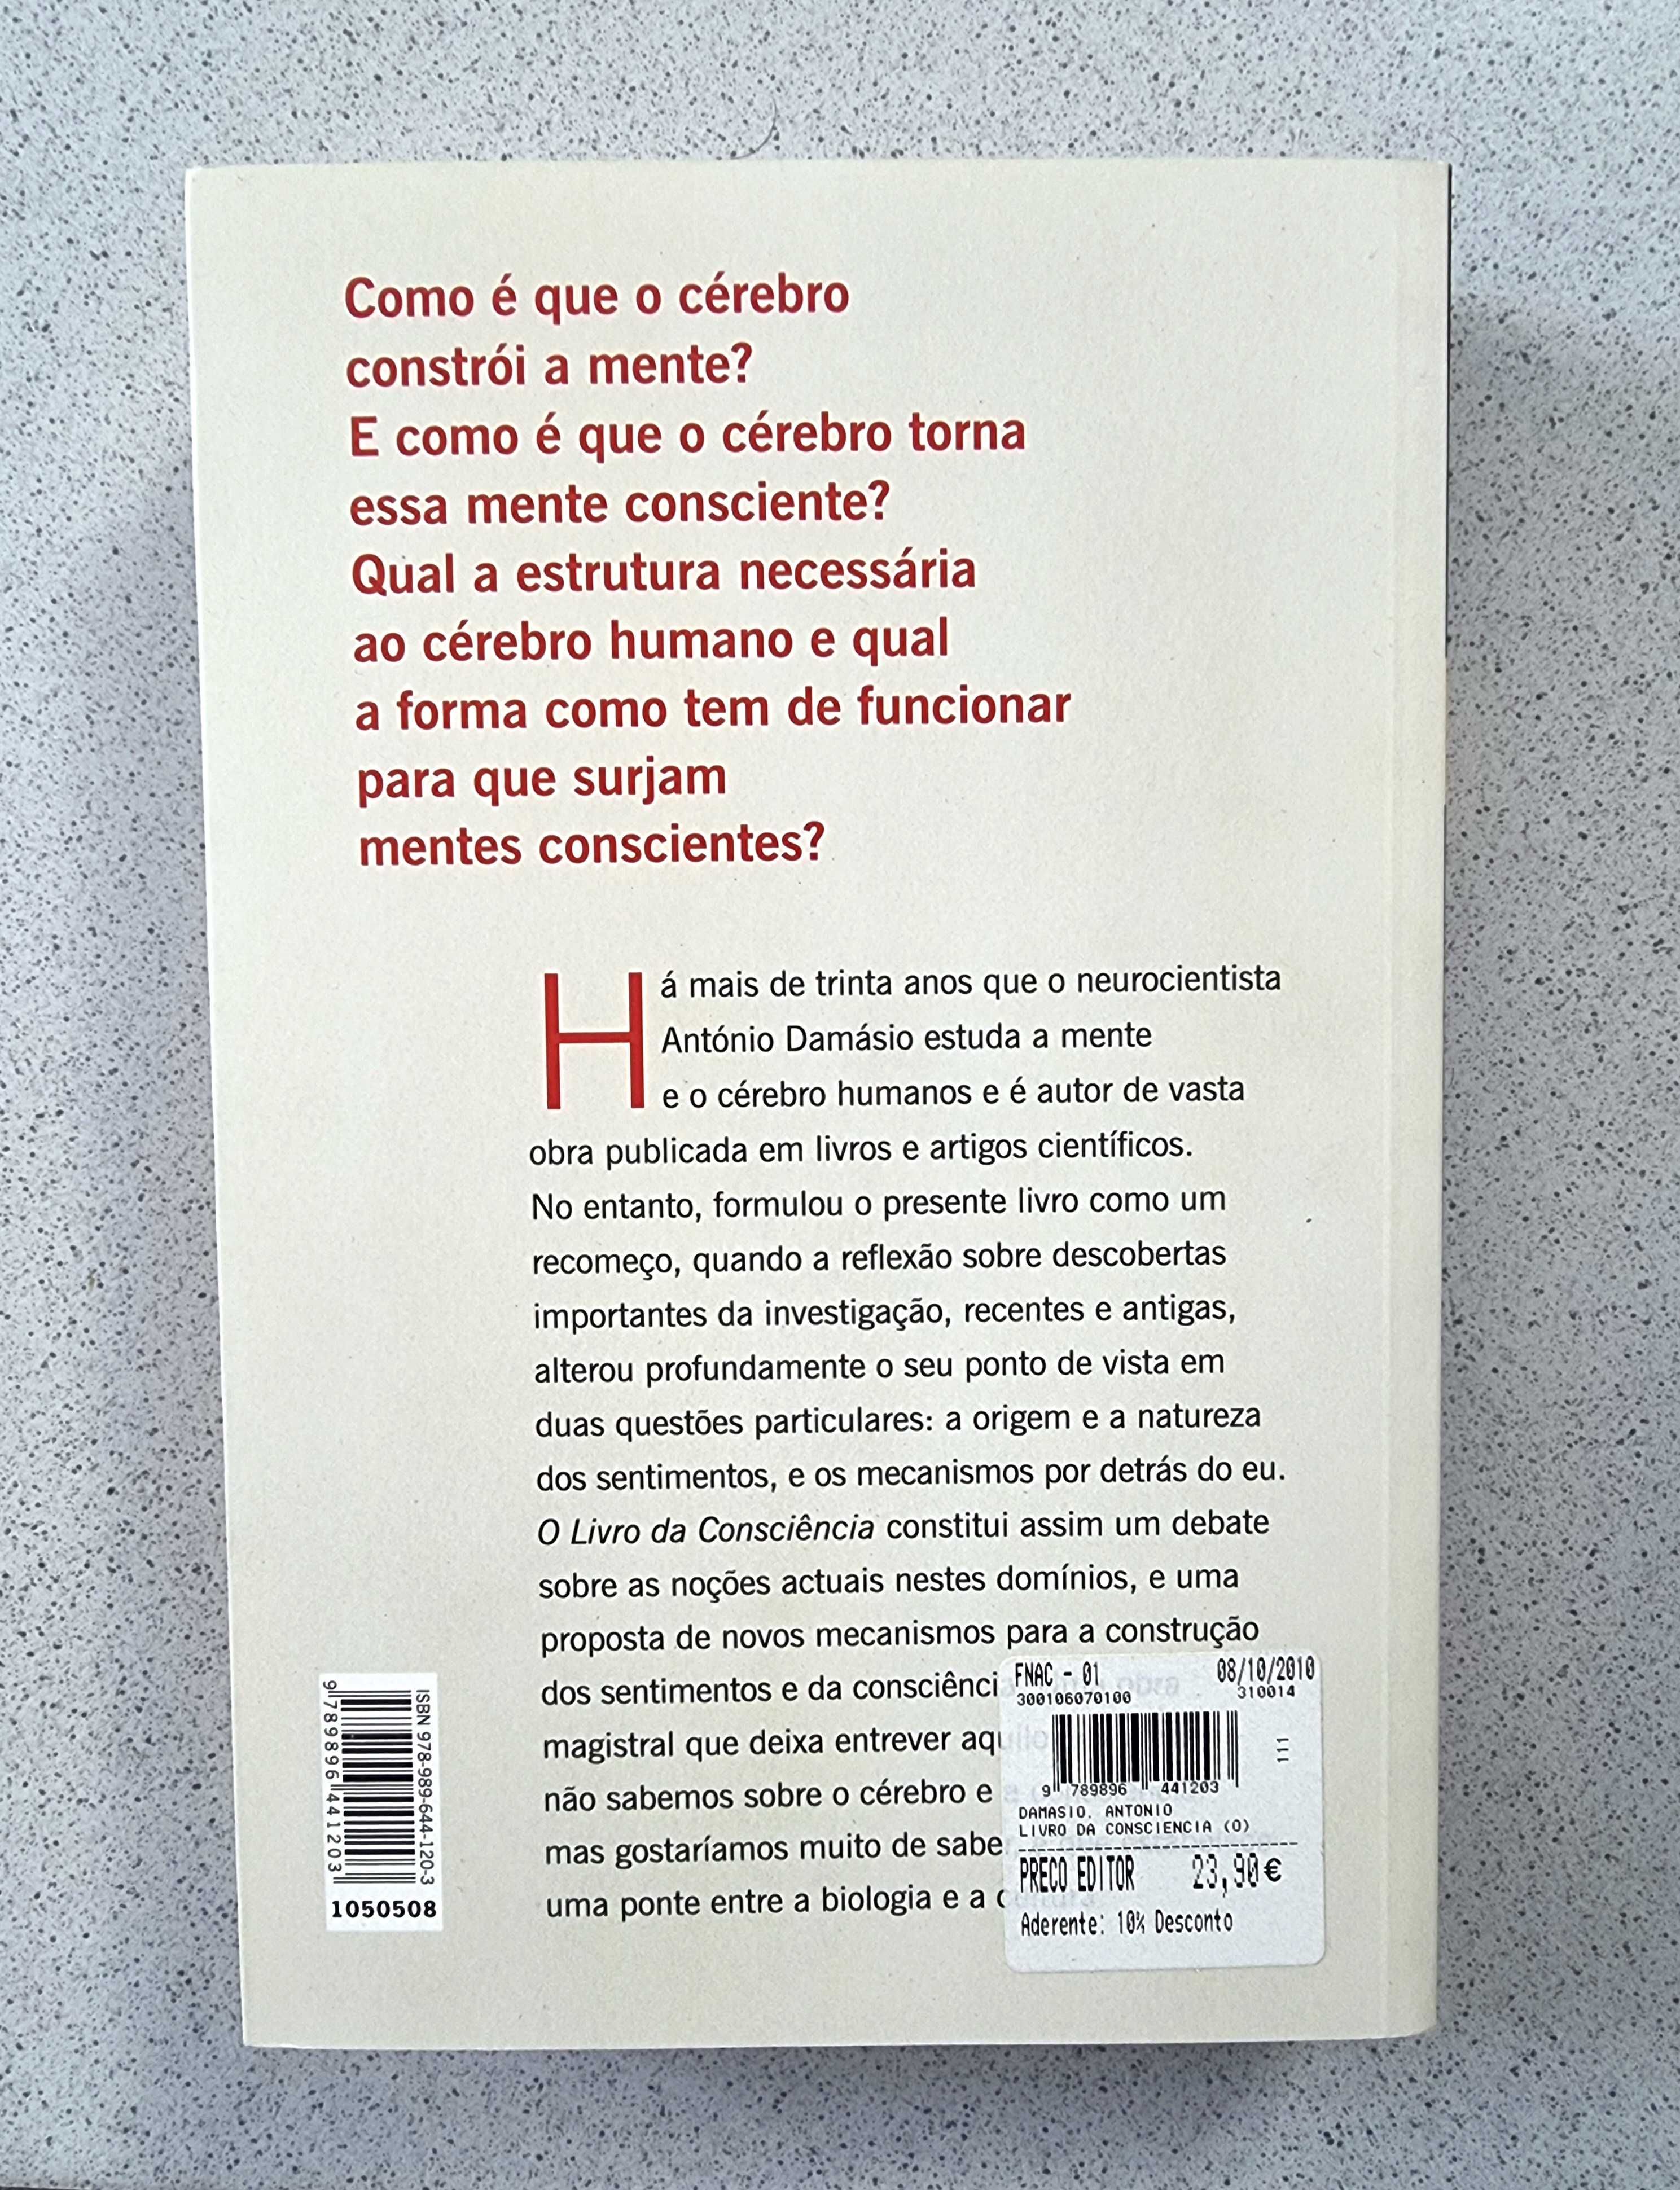 Livro "O Livro da Consciência" de António Damásio